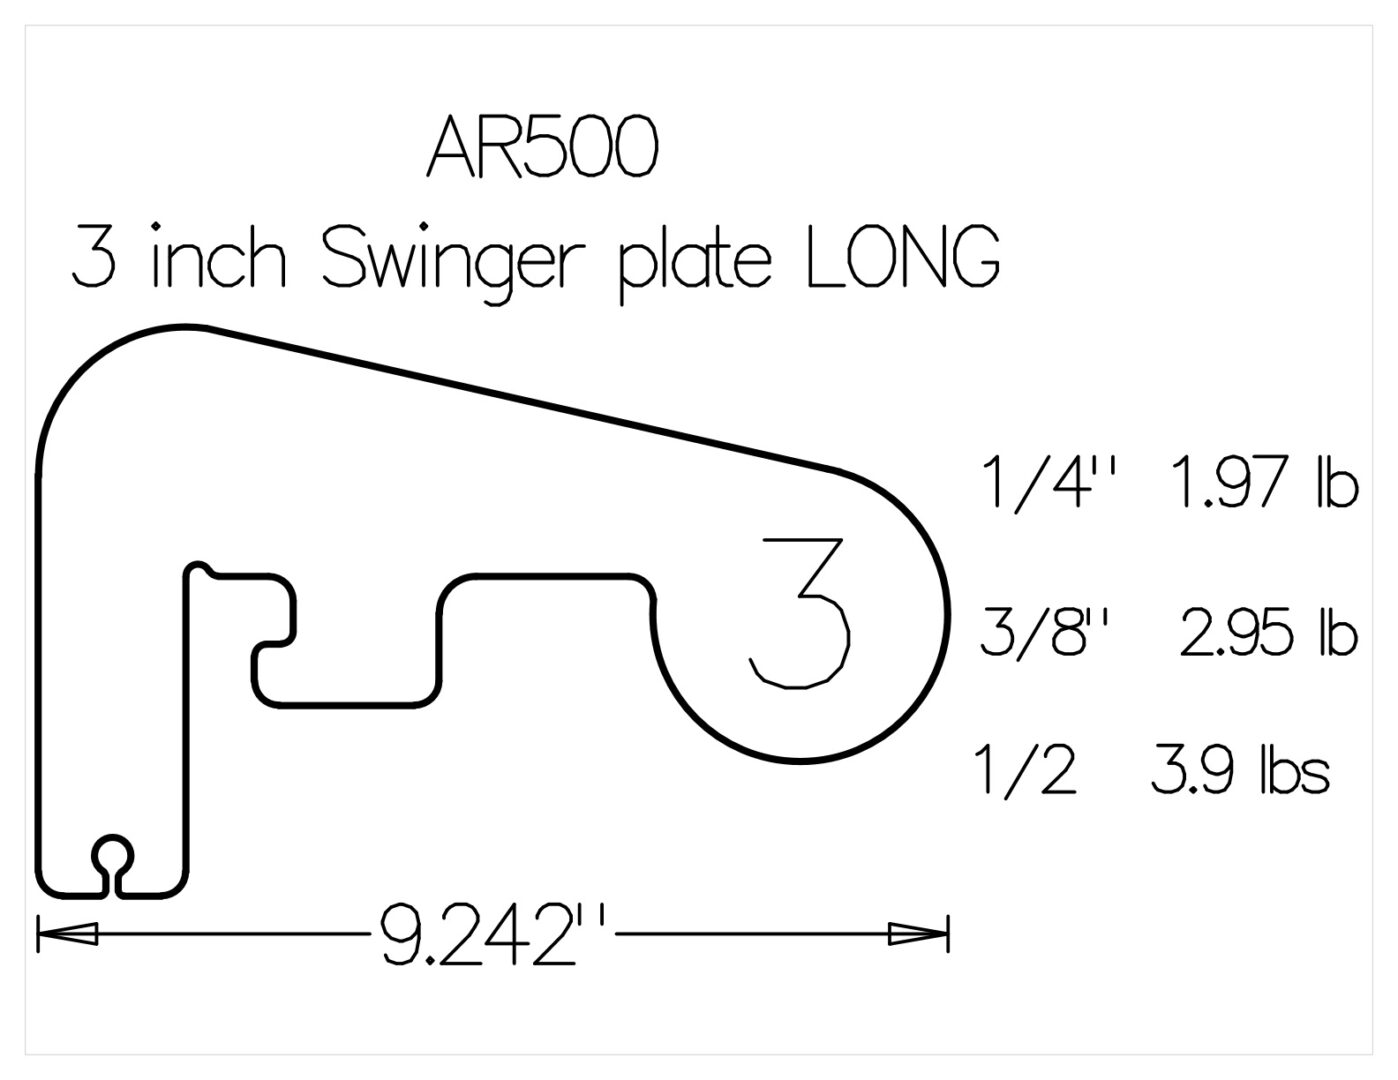 3 inch swinger plate long